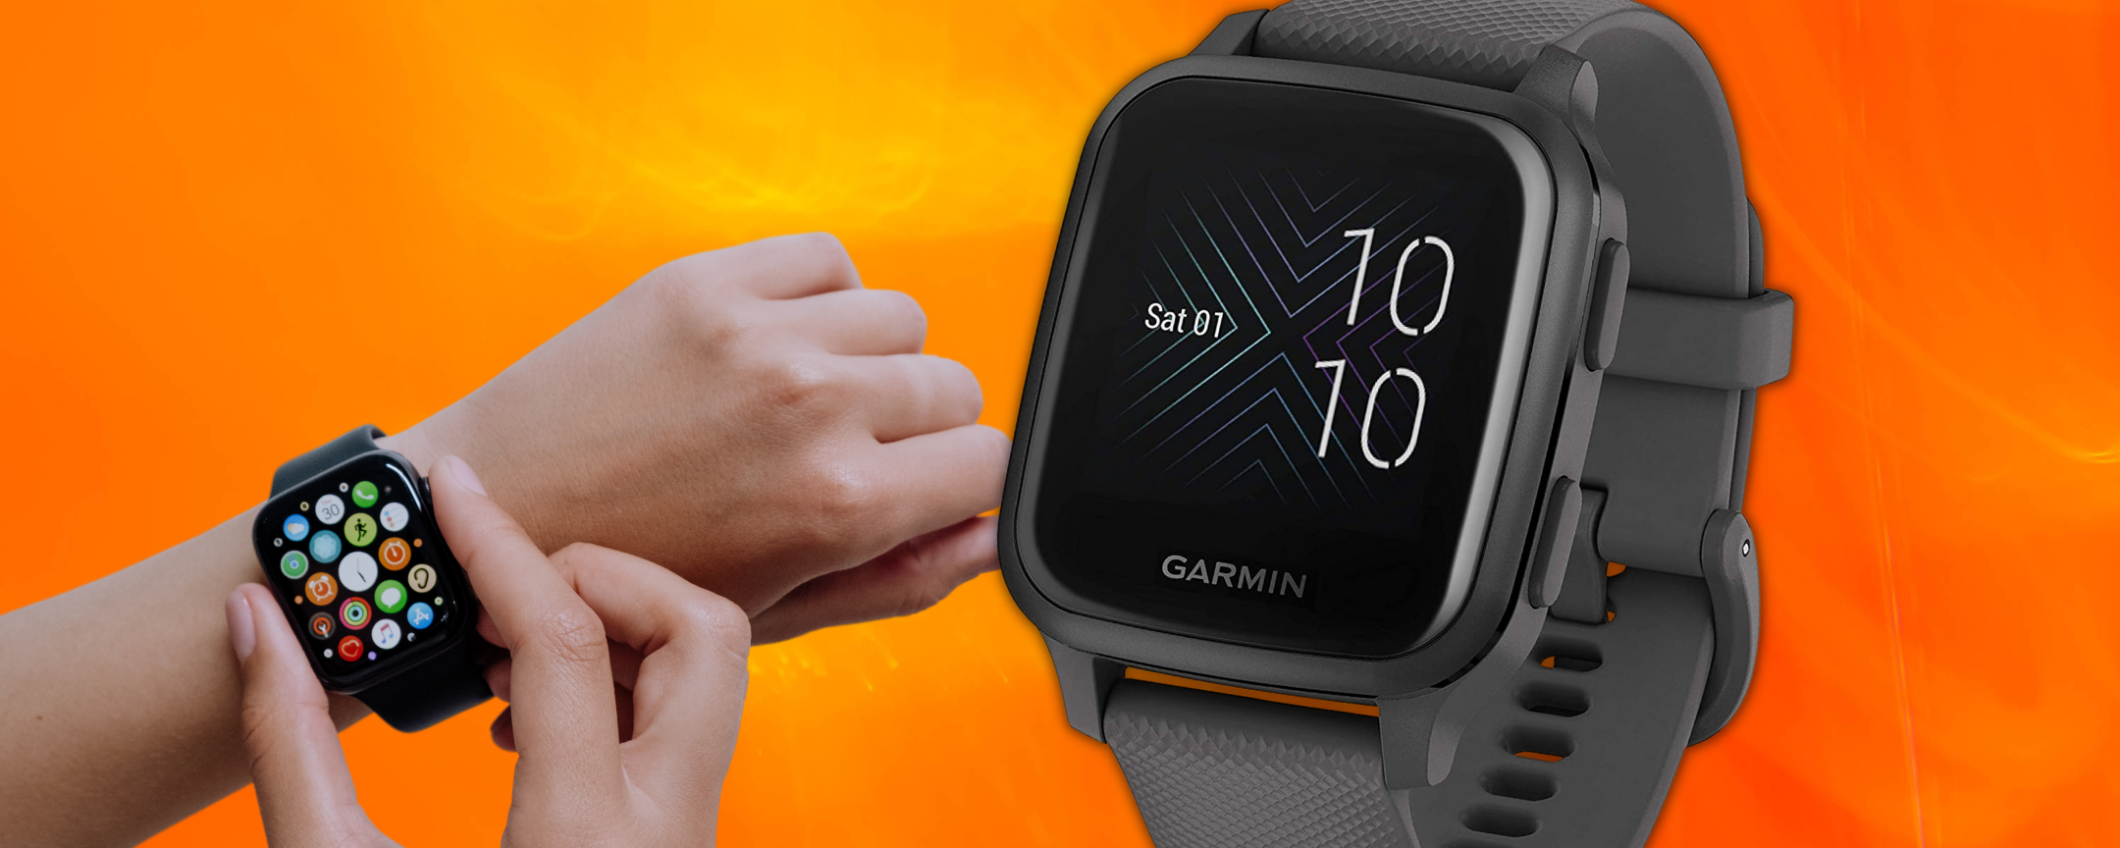 Smartwatch Garmin Pay: paga in un secondo, prezzo BOMBA su Amazon